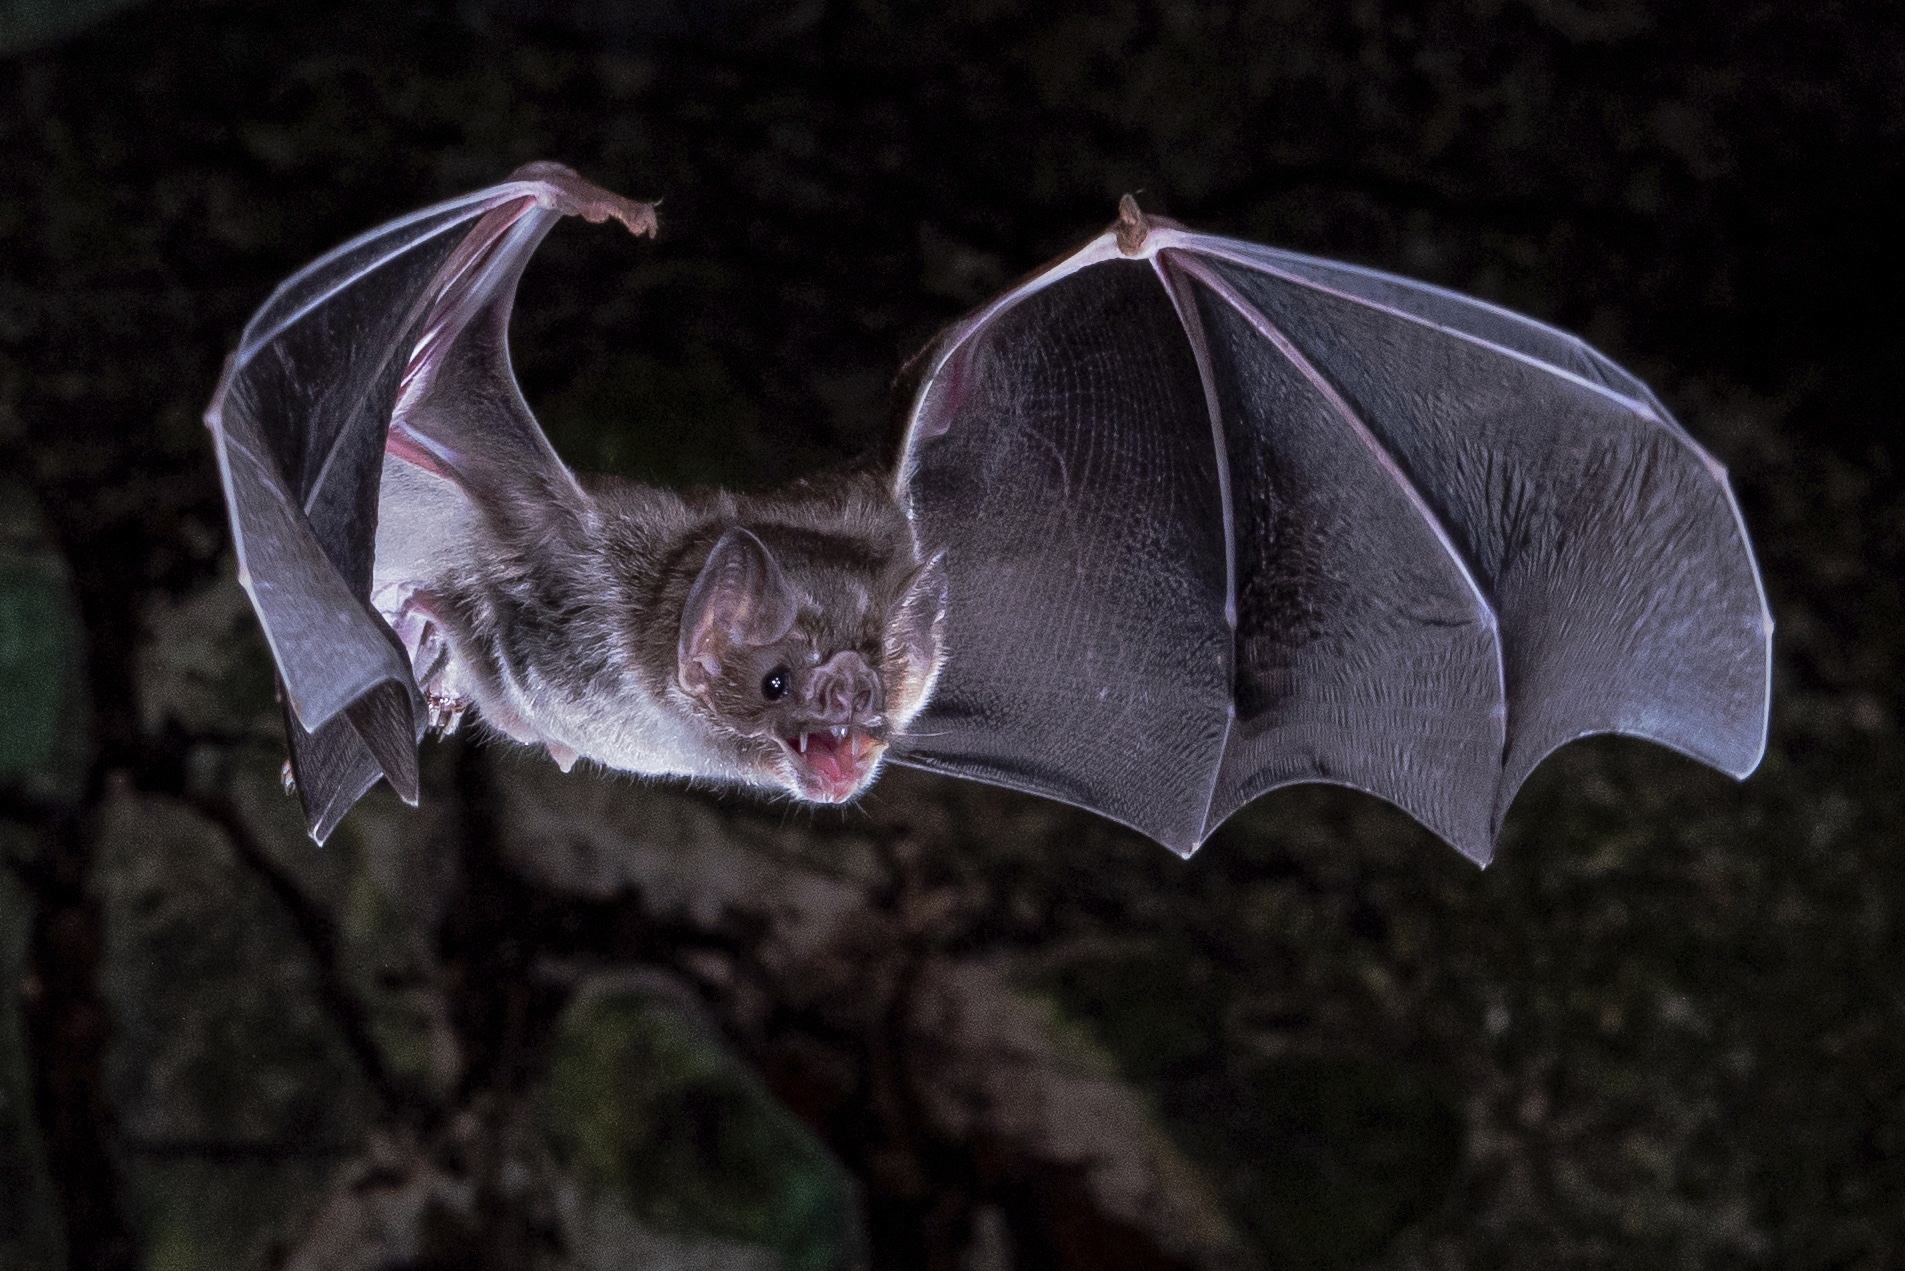 اكتشاف خفافيش يقتصر نظامها الغذائي على الدم فقط! watanserb.com